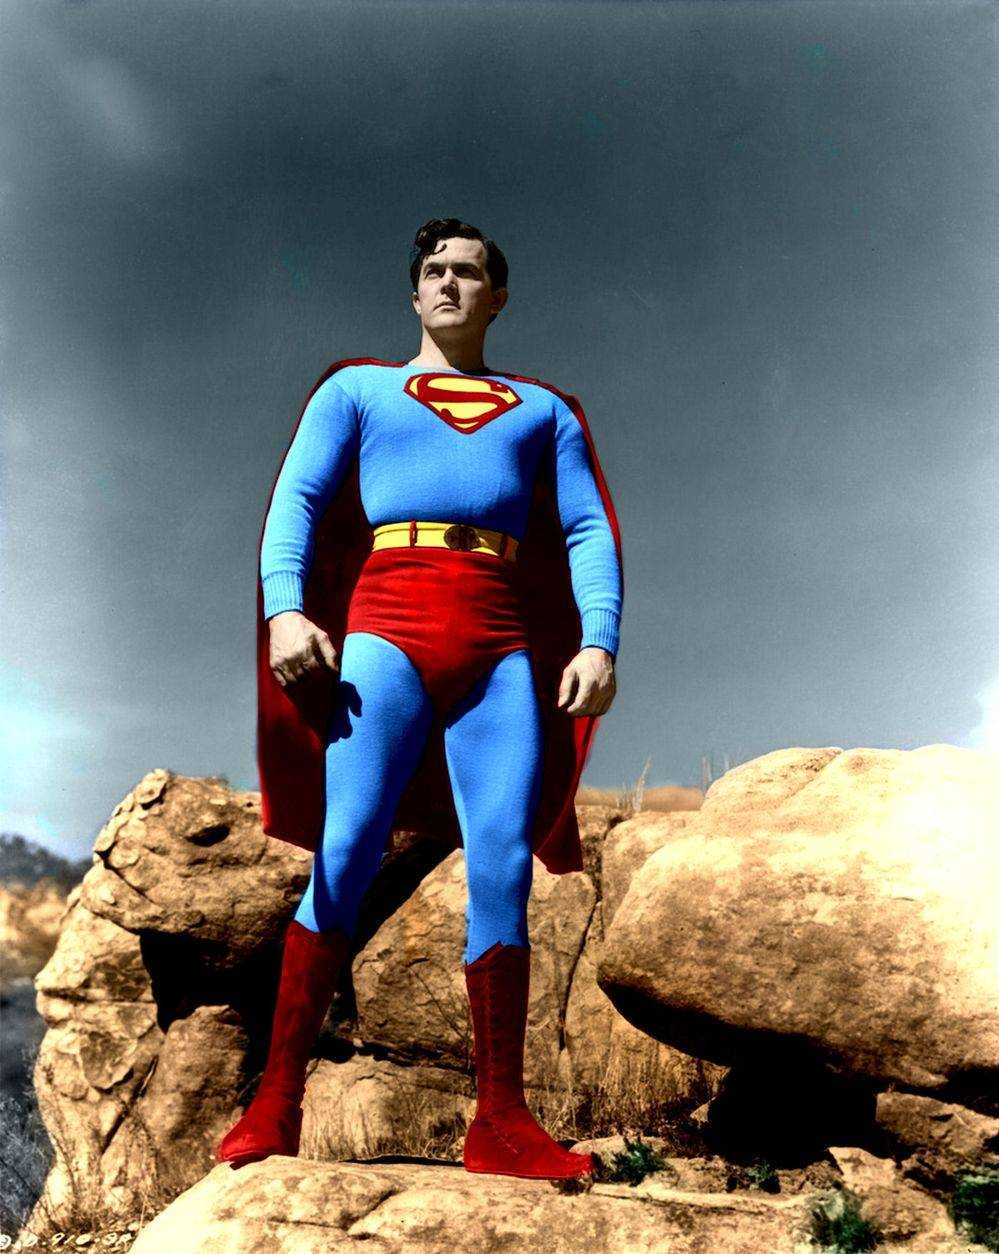  
Kirk Alyn đã đánh mất cả sự nghiệp sau khi diễn Clark Kent. (Ảnh: Pinterest)